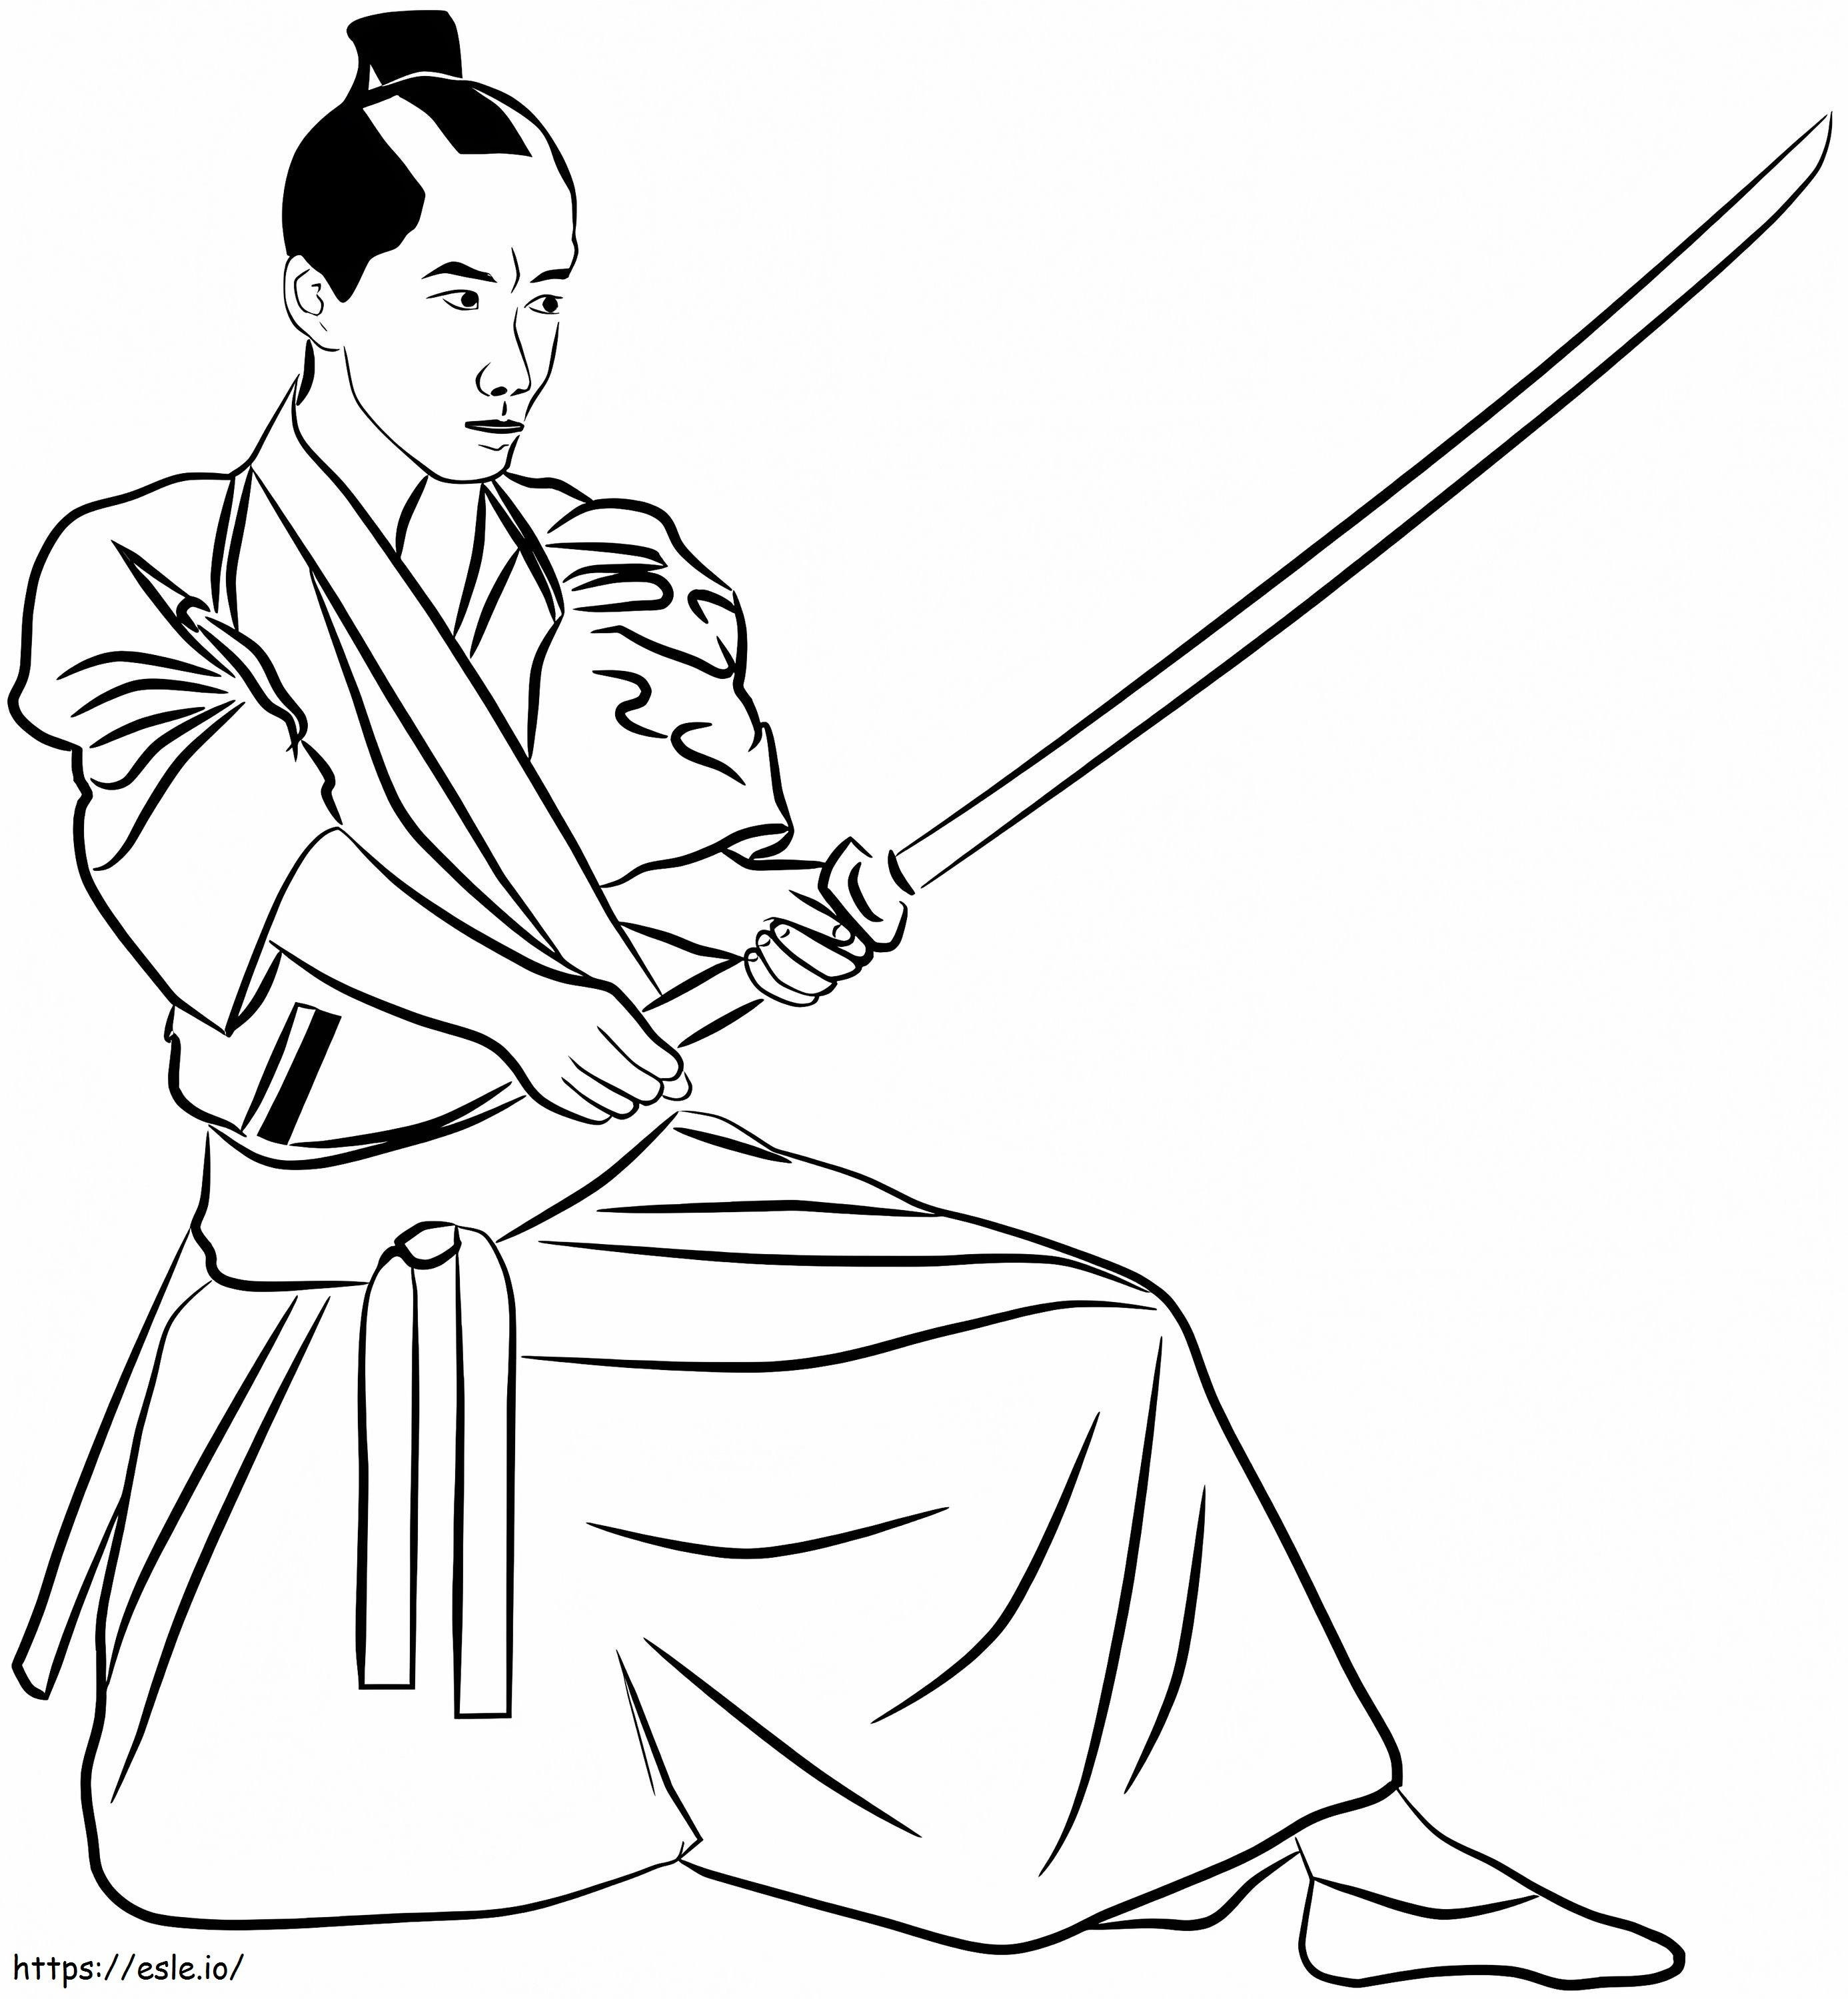 Einfacher Samurai ausmalbilder